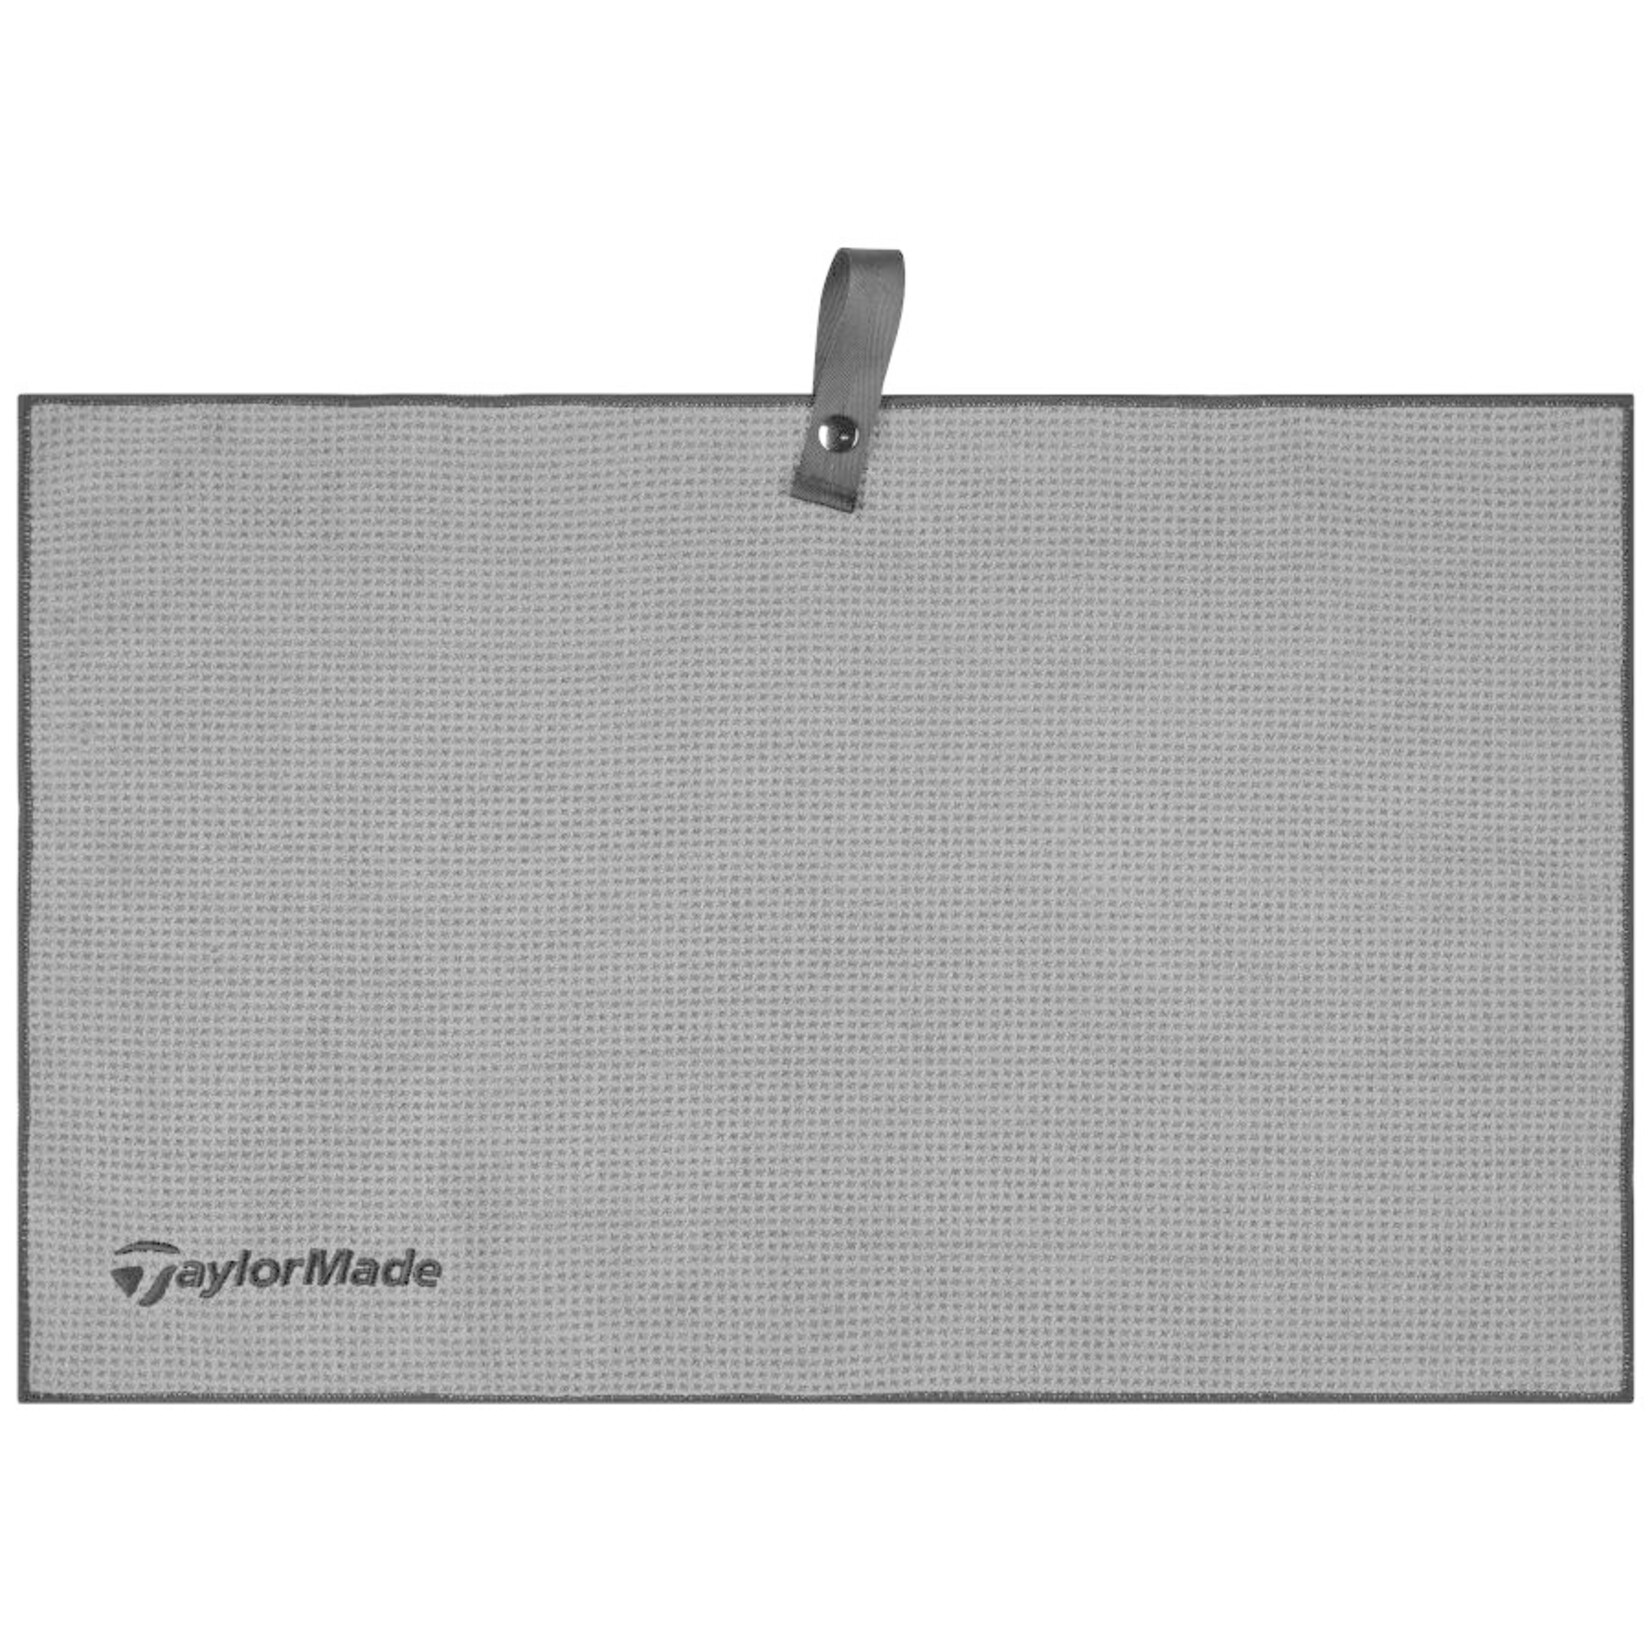 TaylorMade Micro Fibre Cart Towel